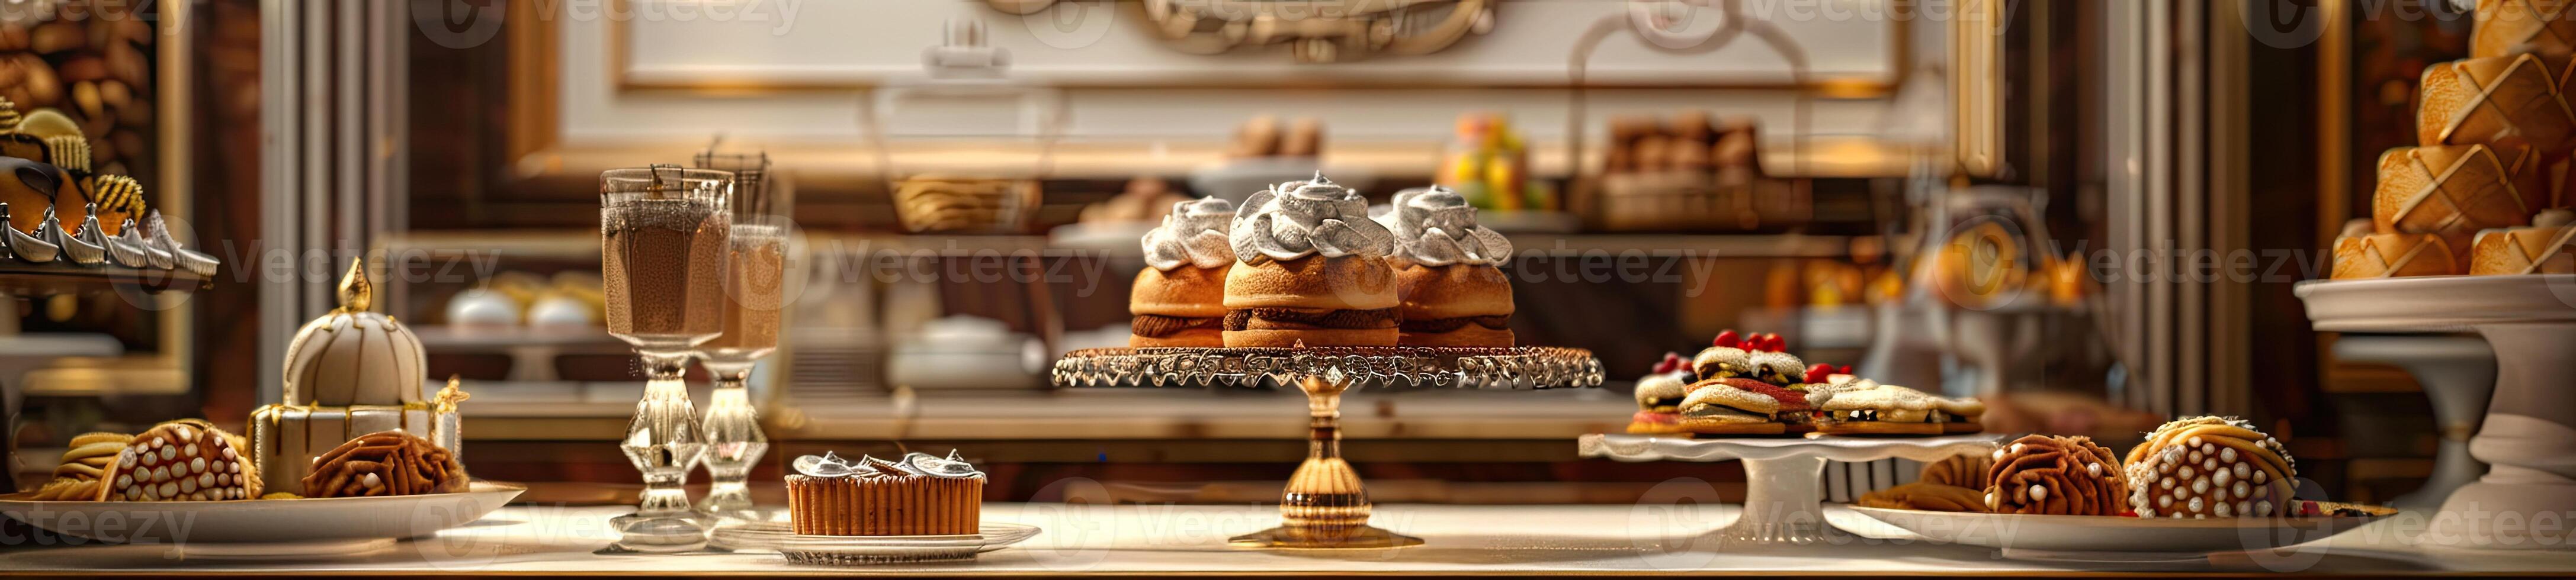 Luxus Bäckerei auf elegant Essen Tabelle foto